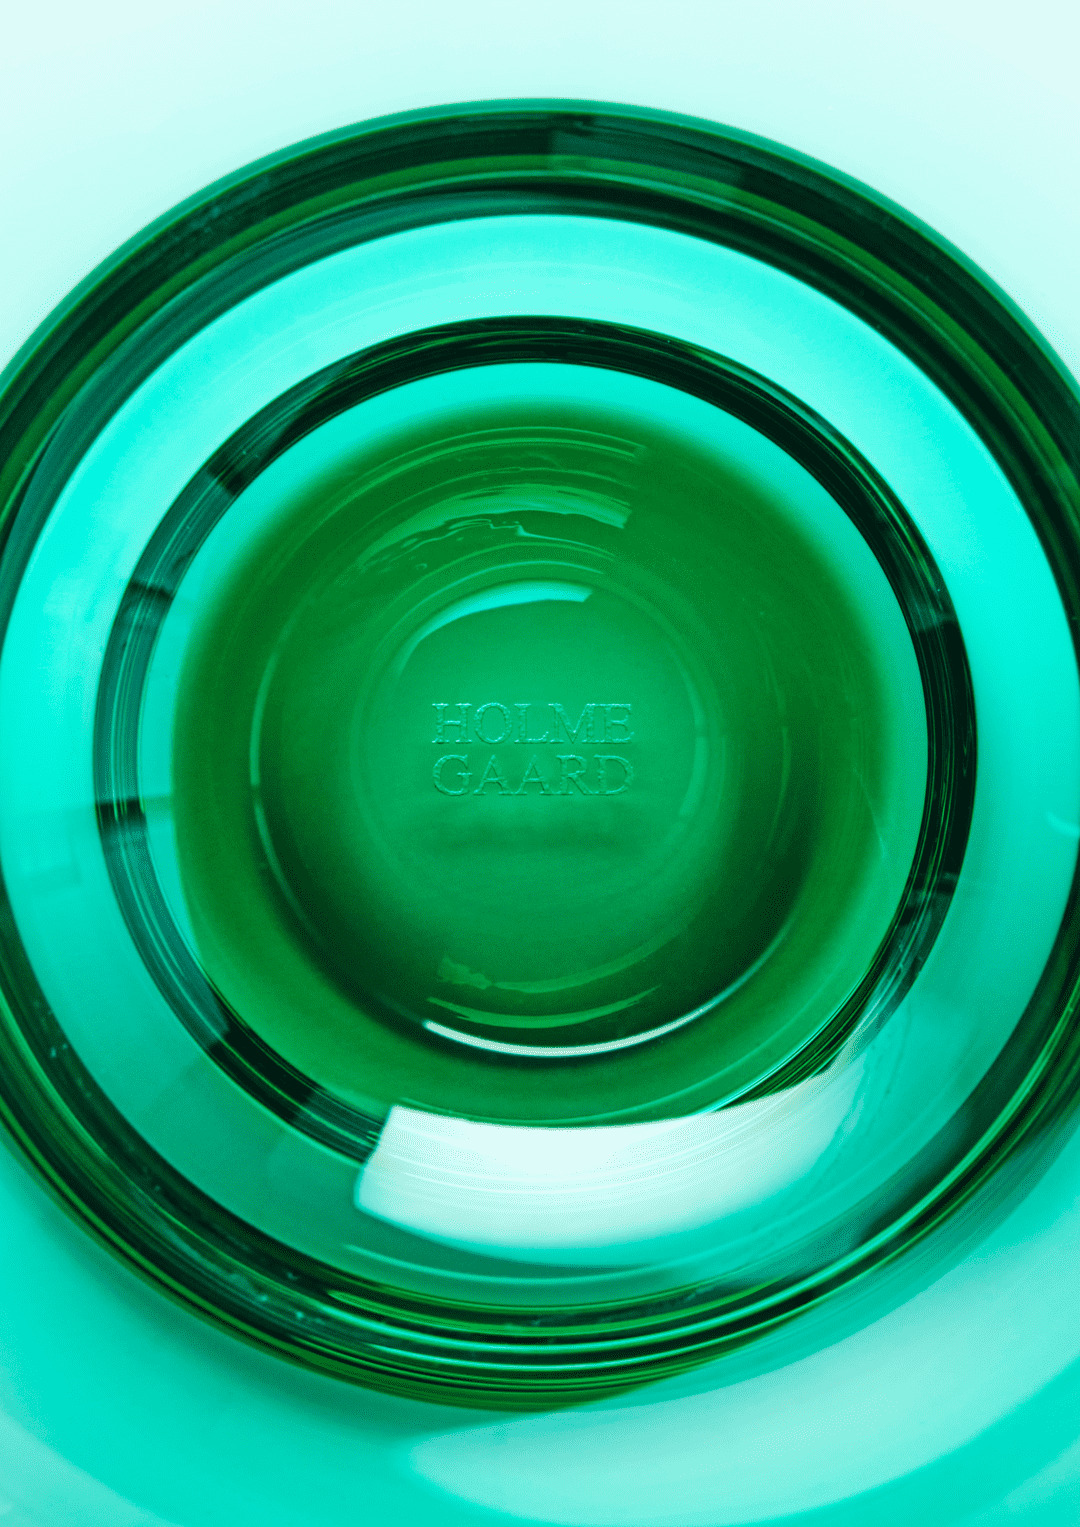 Flow Vandglas 35 cl emerald green